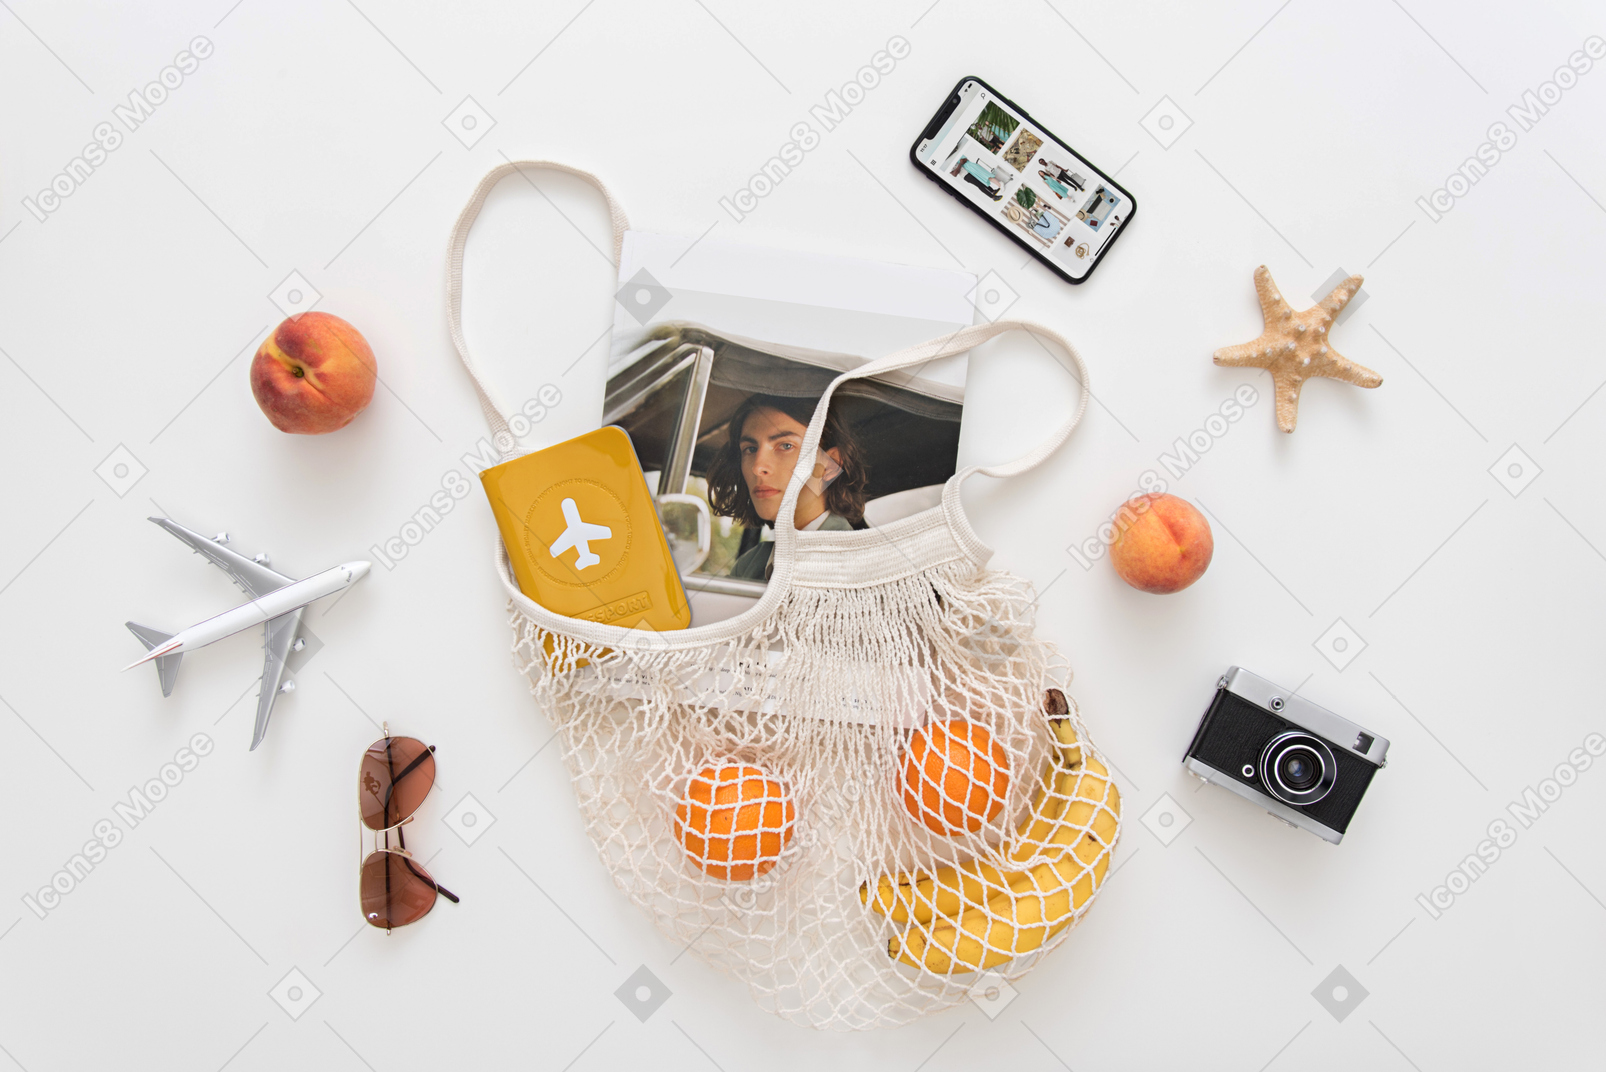 Avoska avec fruits, étui de passeport, magazine, maquette d'avion, lunettes de soleil, appareil photo vintage et smartphone